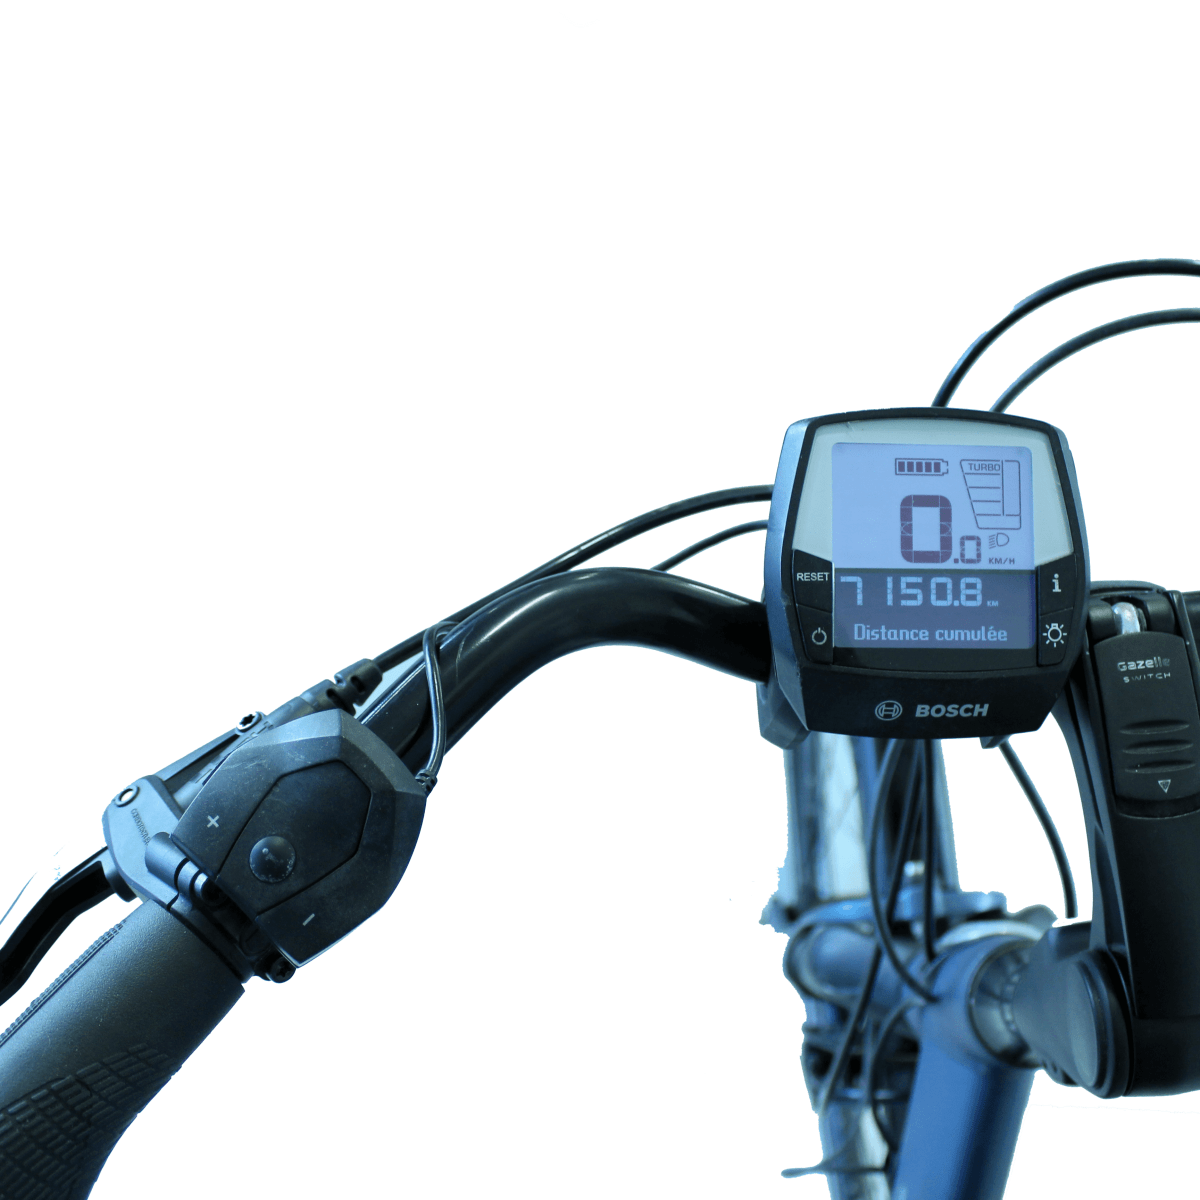 Vélo électrique reconditionné Arroyo C7 + HMB bleu | LOEWI